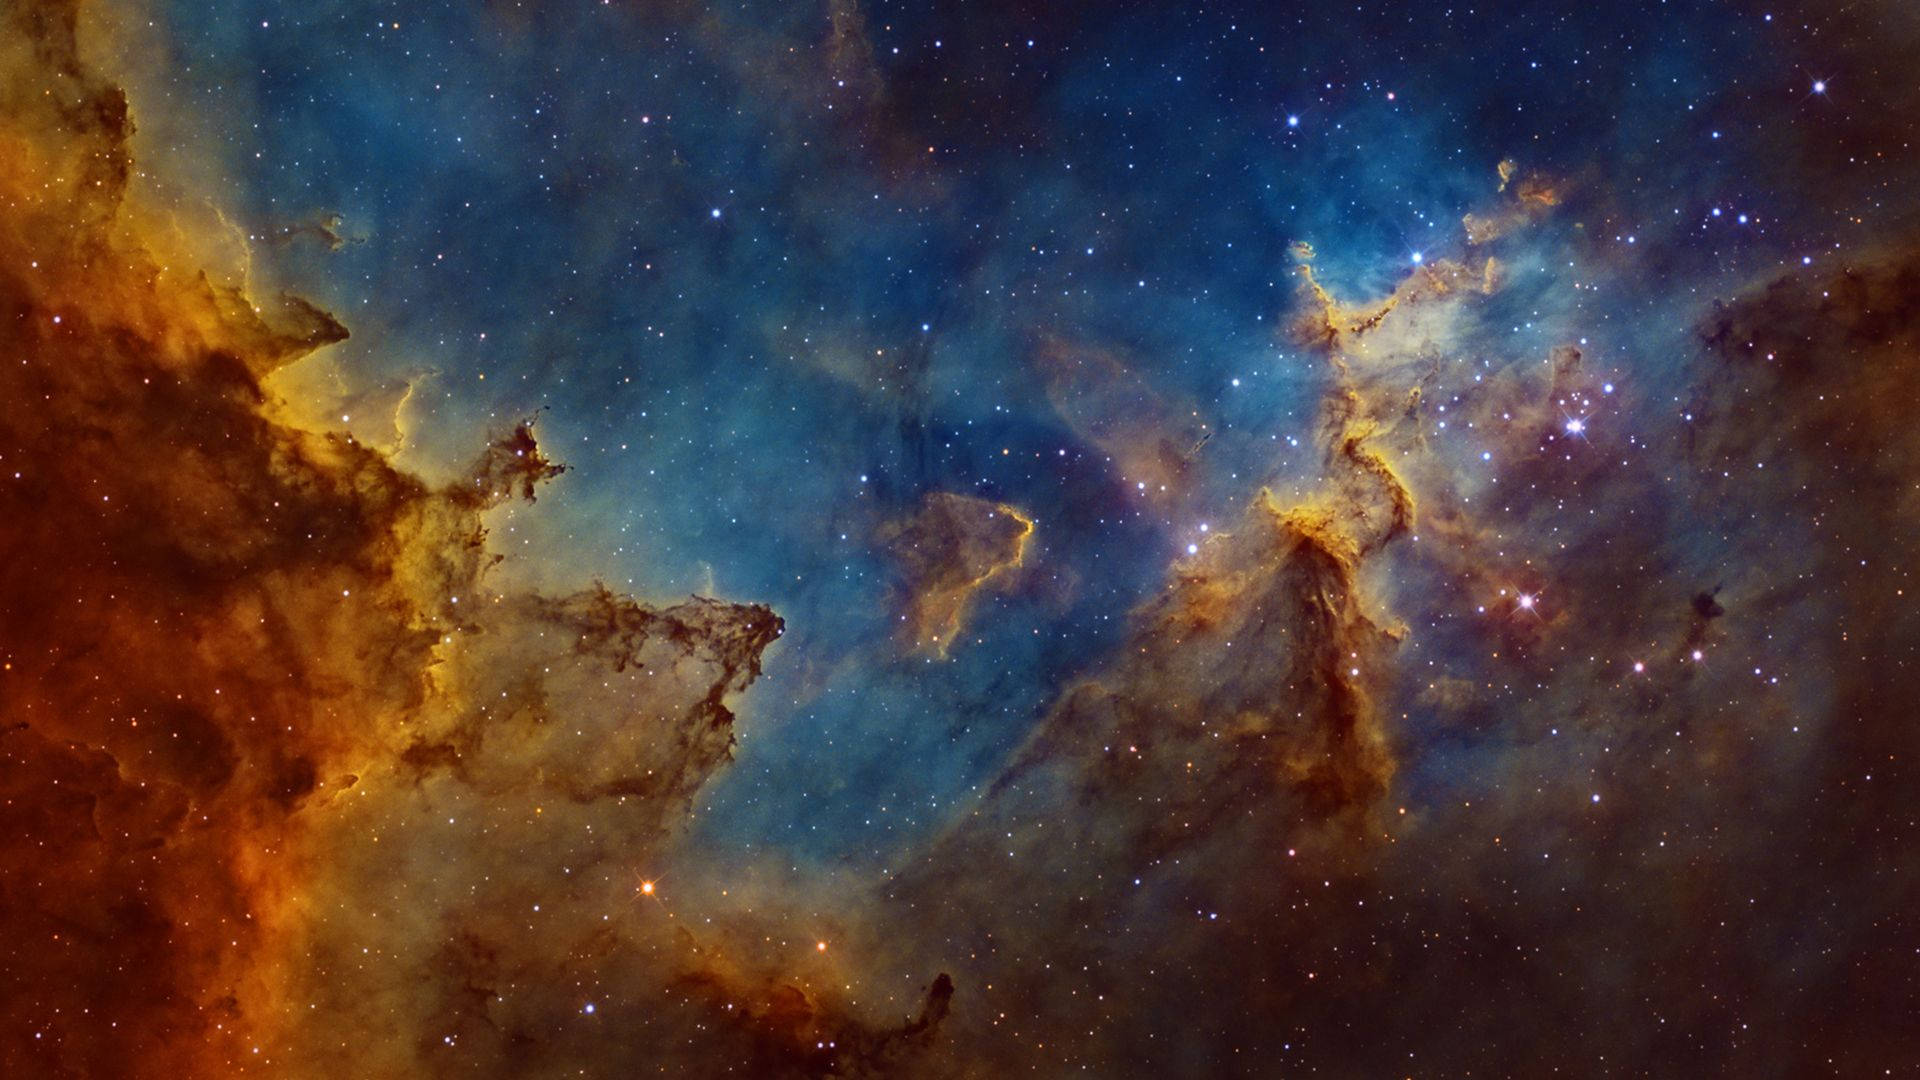 Nebula 1920X1080 Wallpaper and Background Image